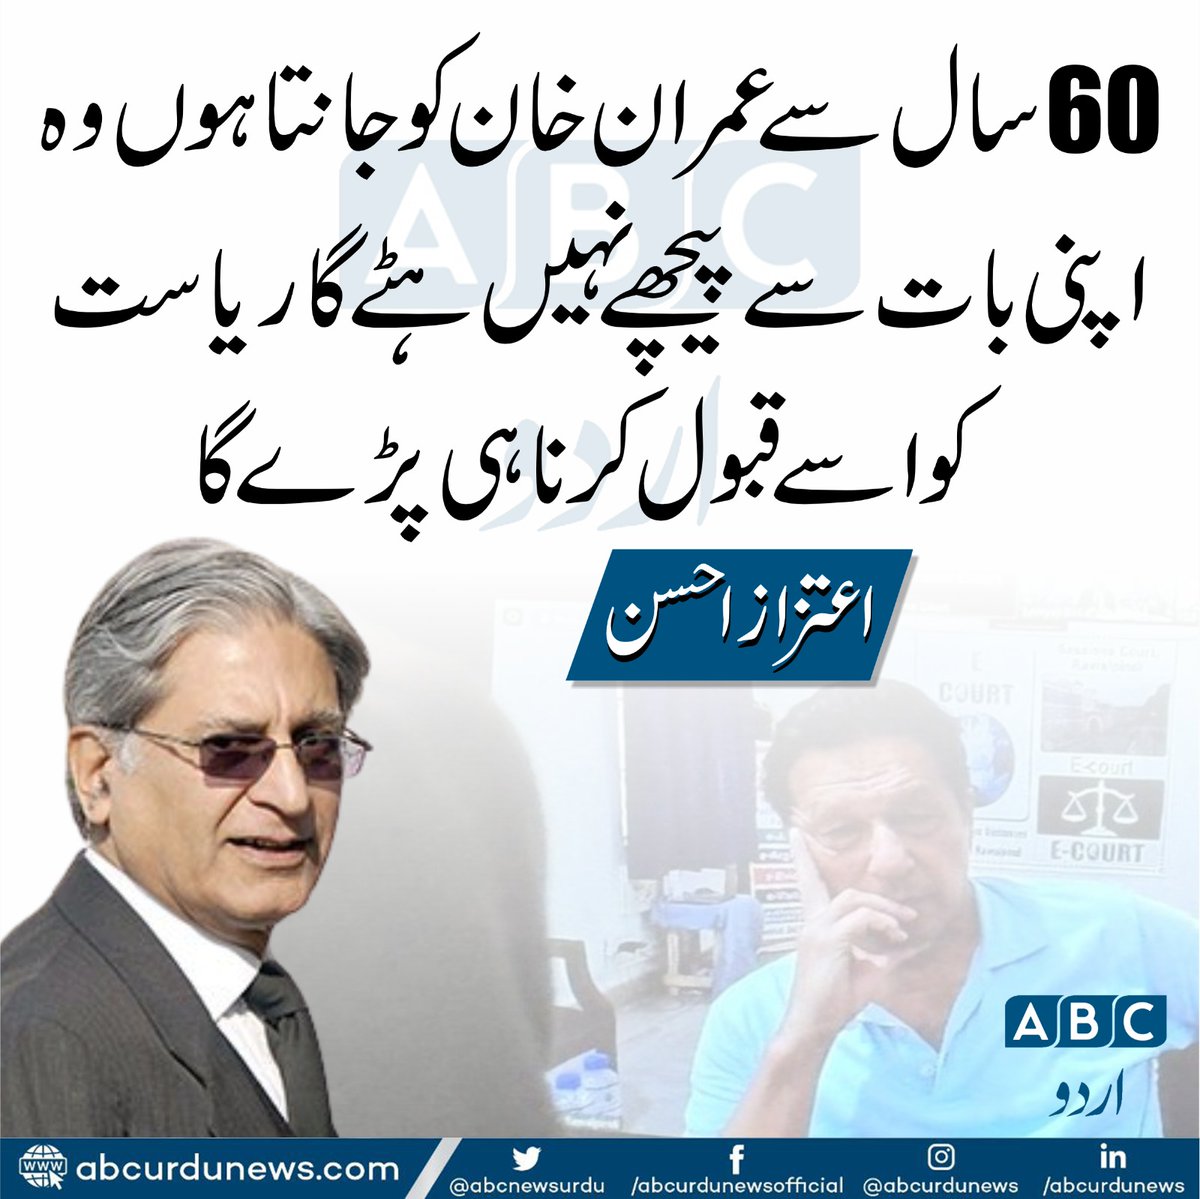 60سال سے عمران خان کو جانتا ہوں وہ اپنی بات سے پیچھے نہیں ہٹے گا ریاست کو اسے قبول کرنا ہی پڑے گا .اعتزاز احسن
@AitzazAhsanP 
#imranKhan